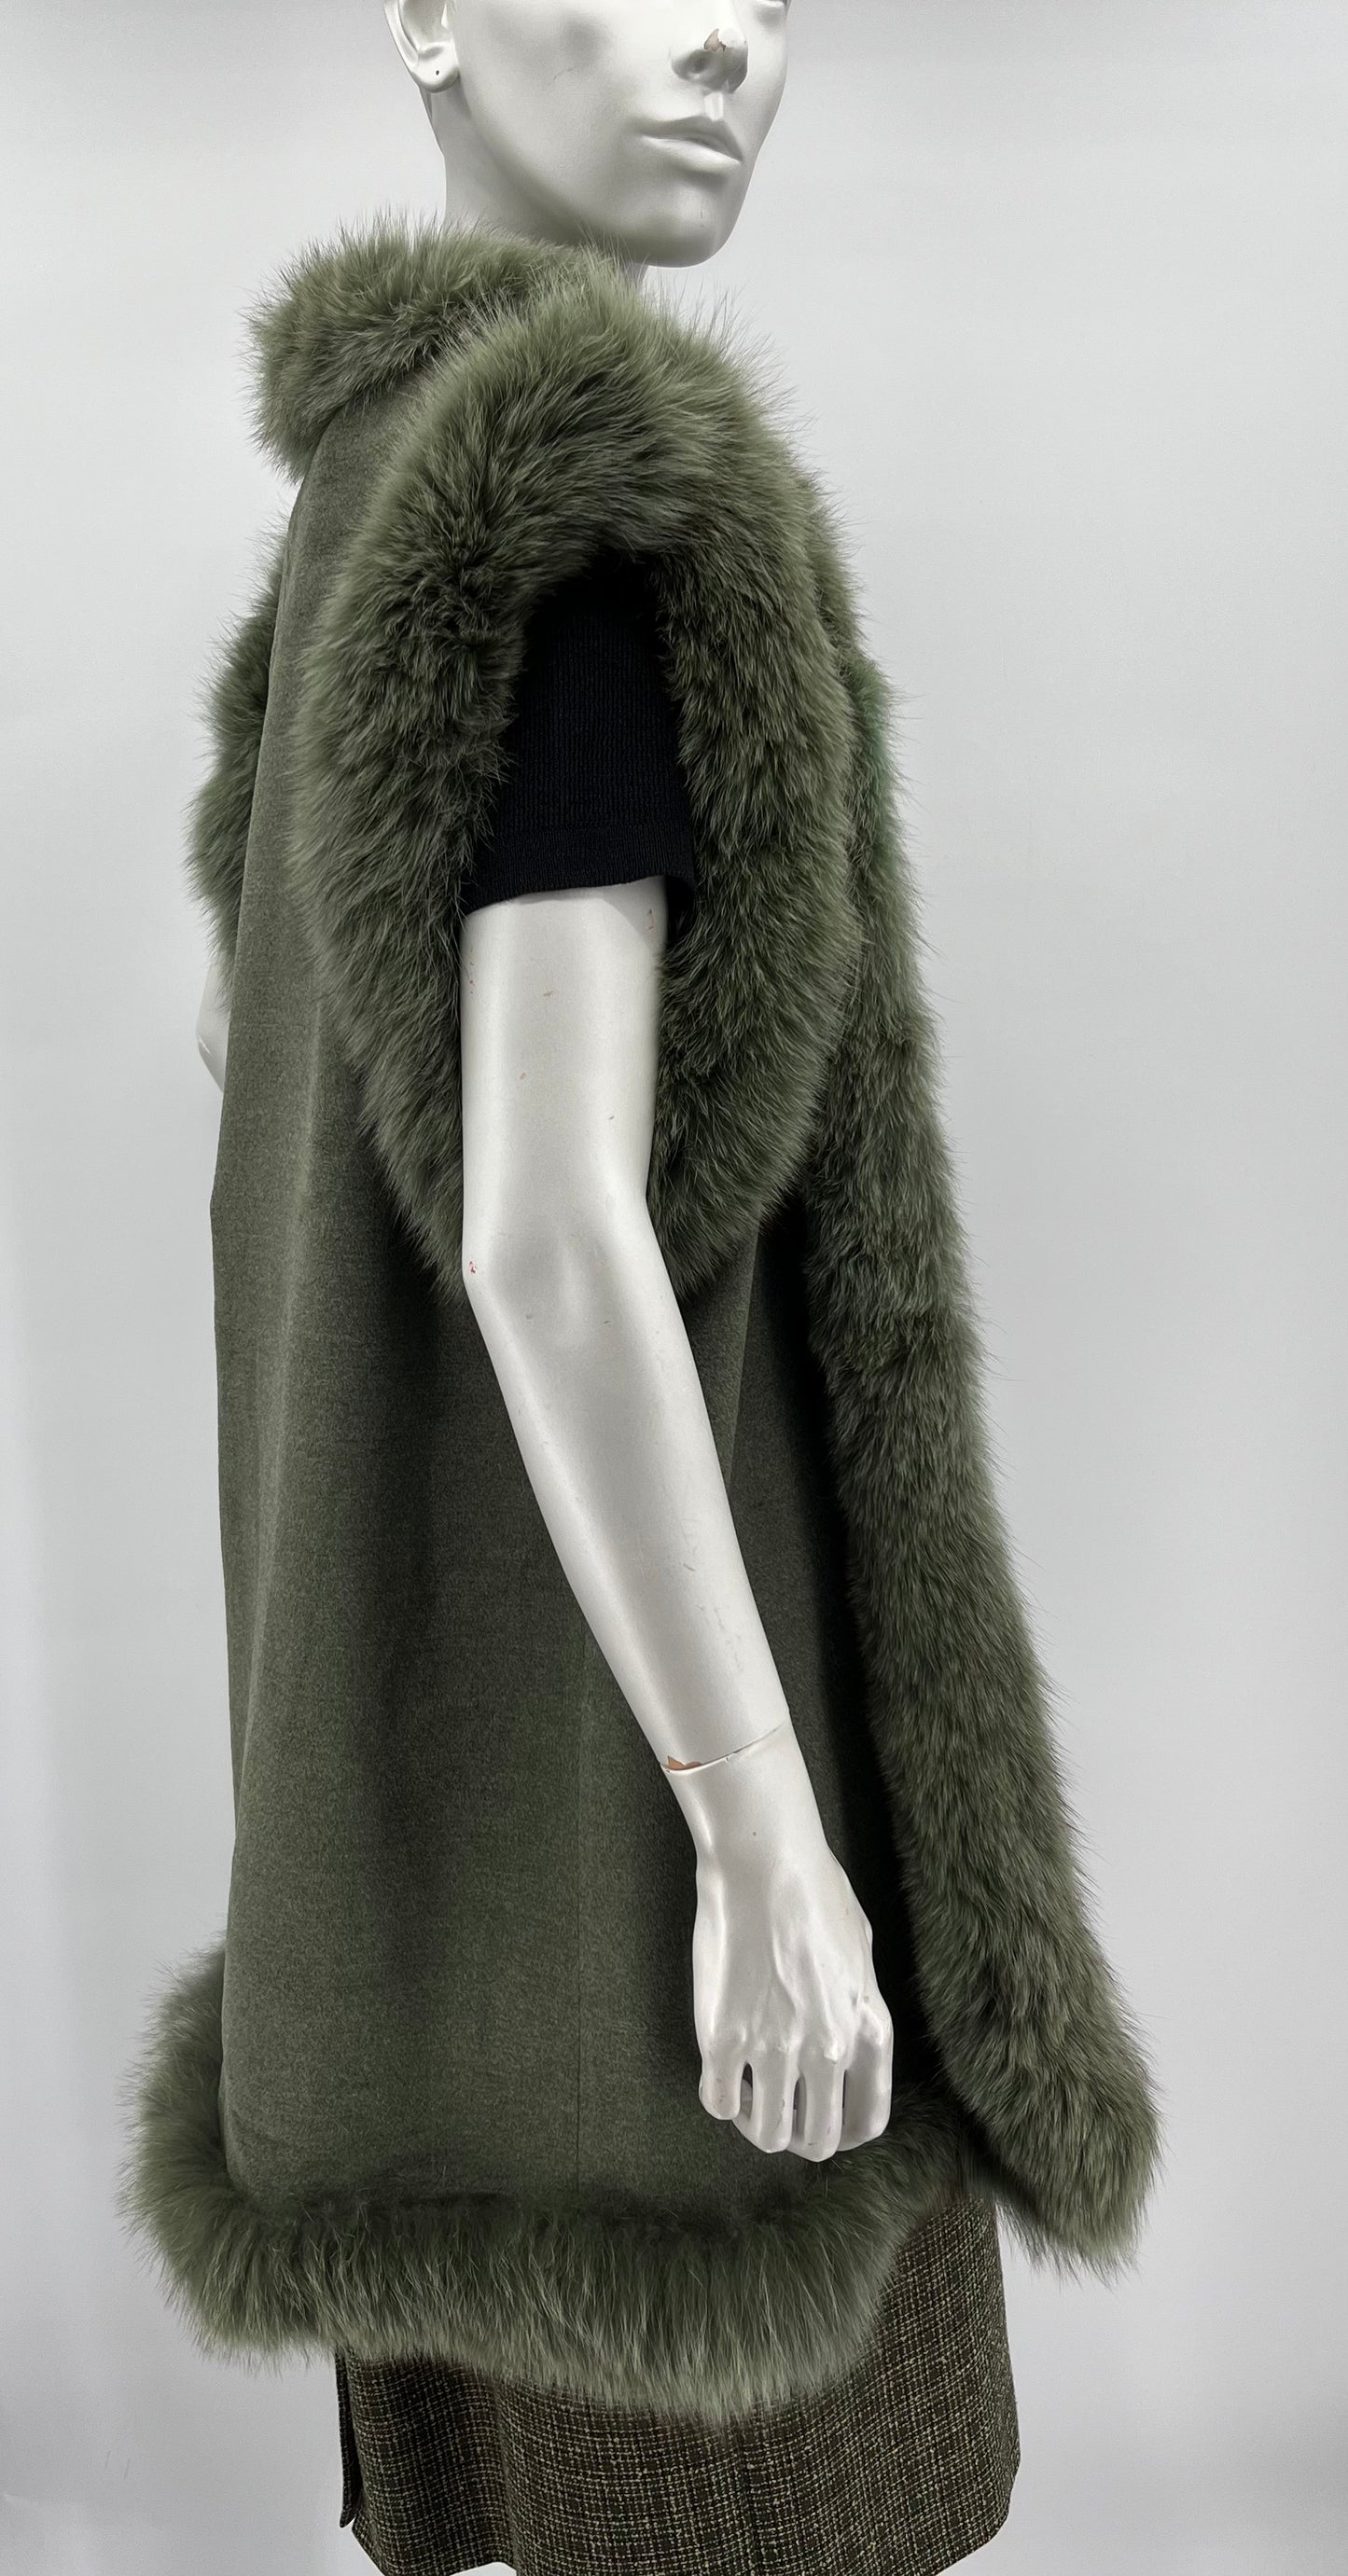 Amanda, vihreä silkki-villaliivi, 90-2000-luku, koko 40